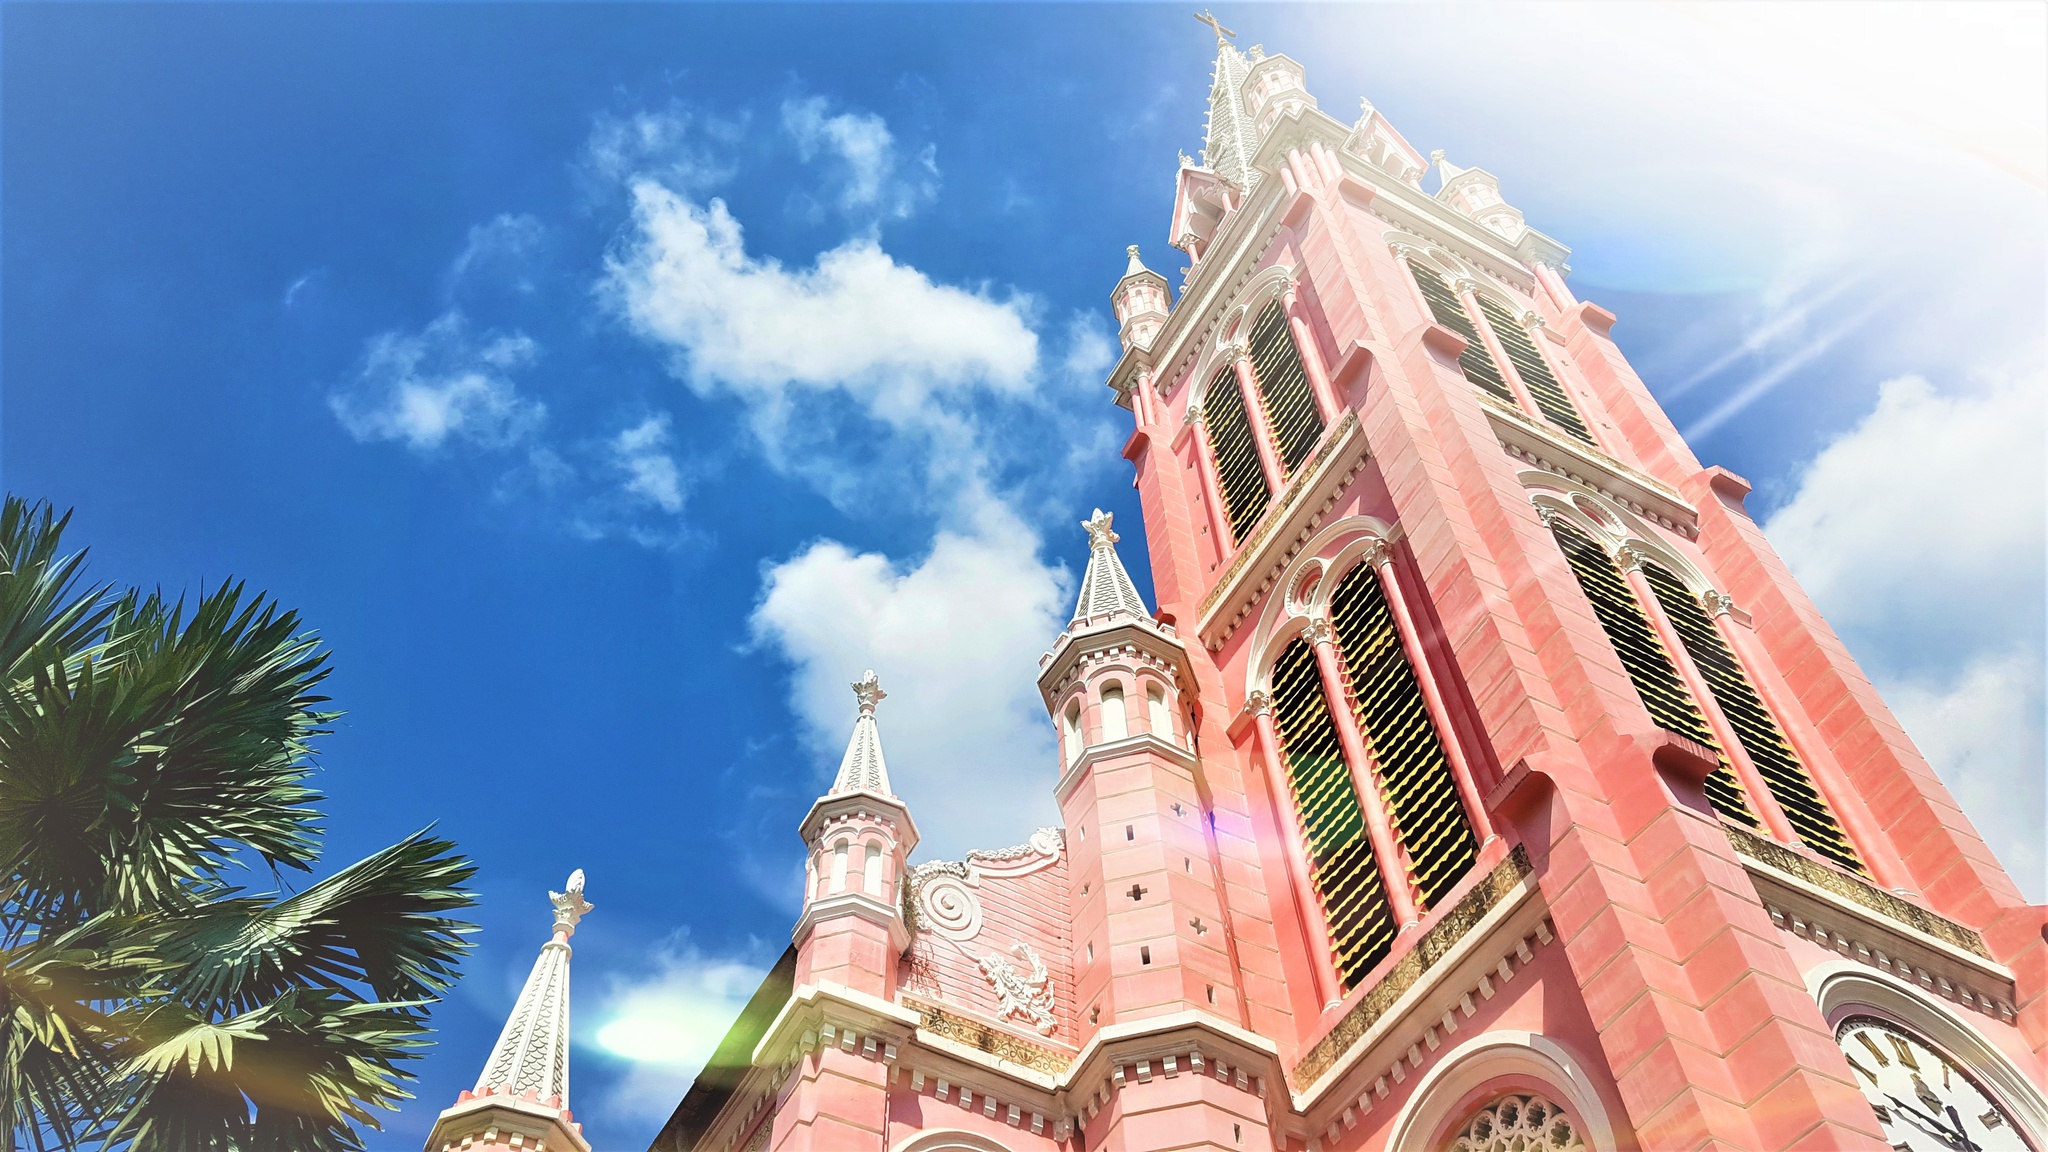 Khám phá Nhà thờ Tân Định - Nét hồng độc đáo của Thành phố Hồ Chí Minh